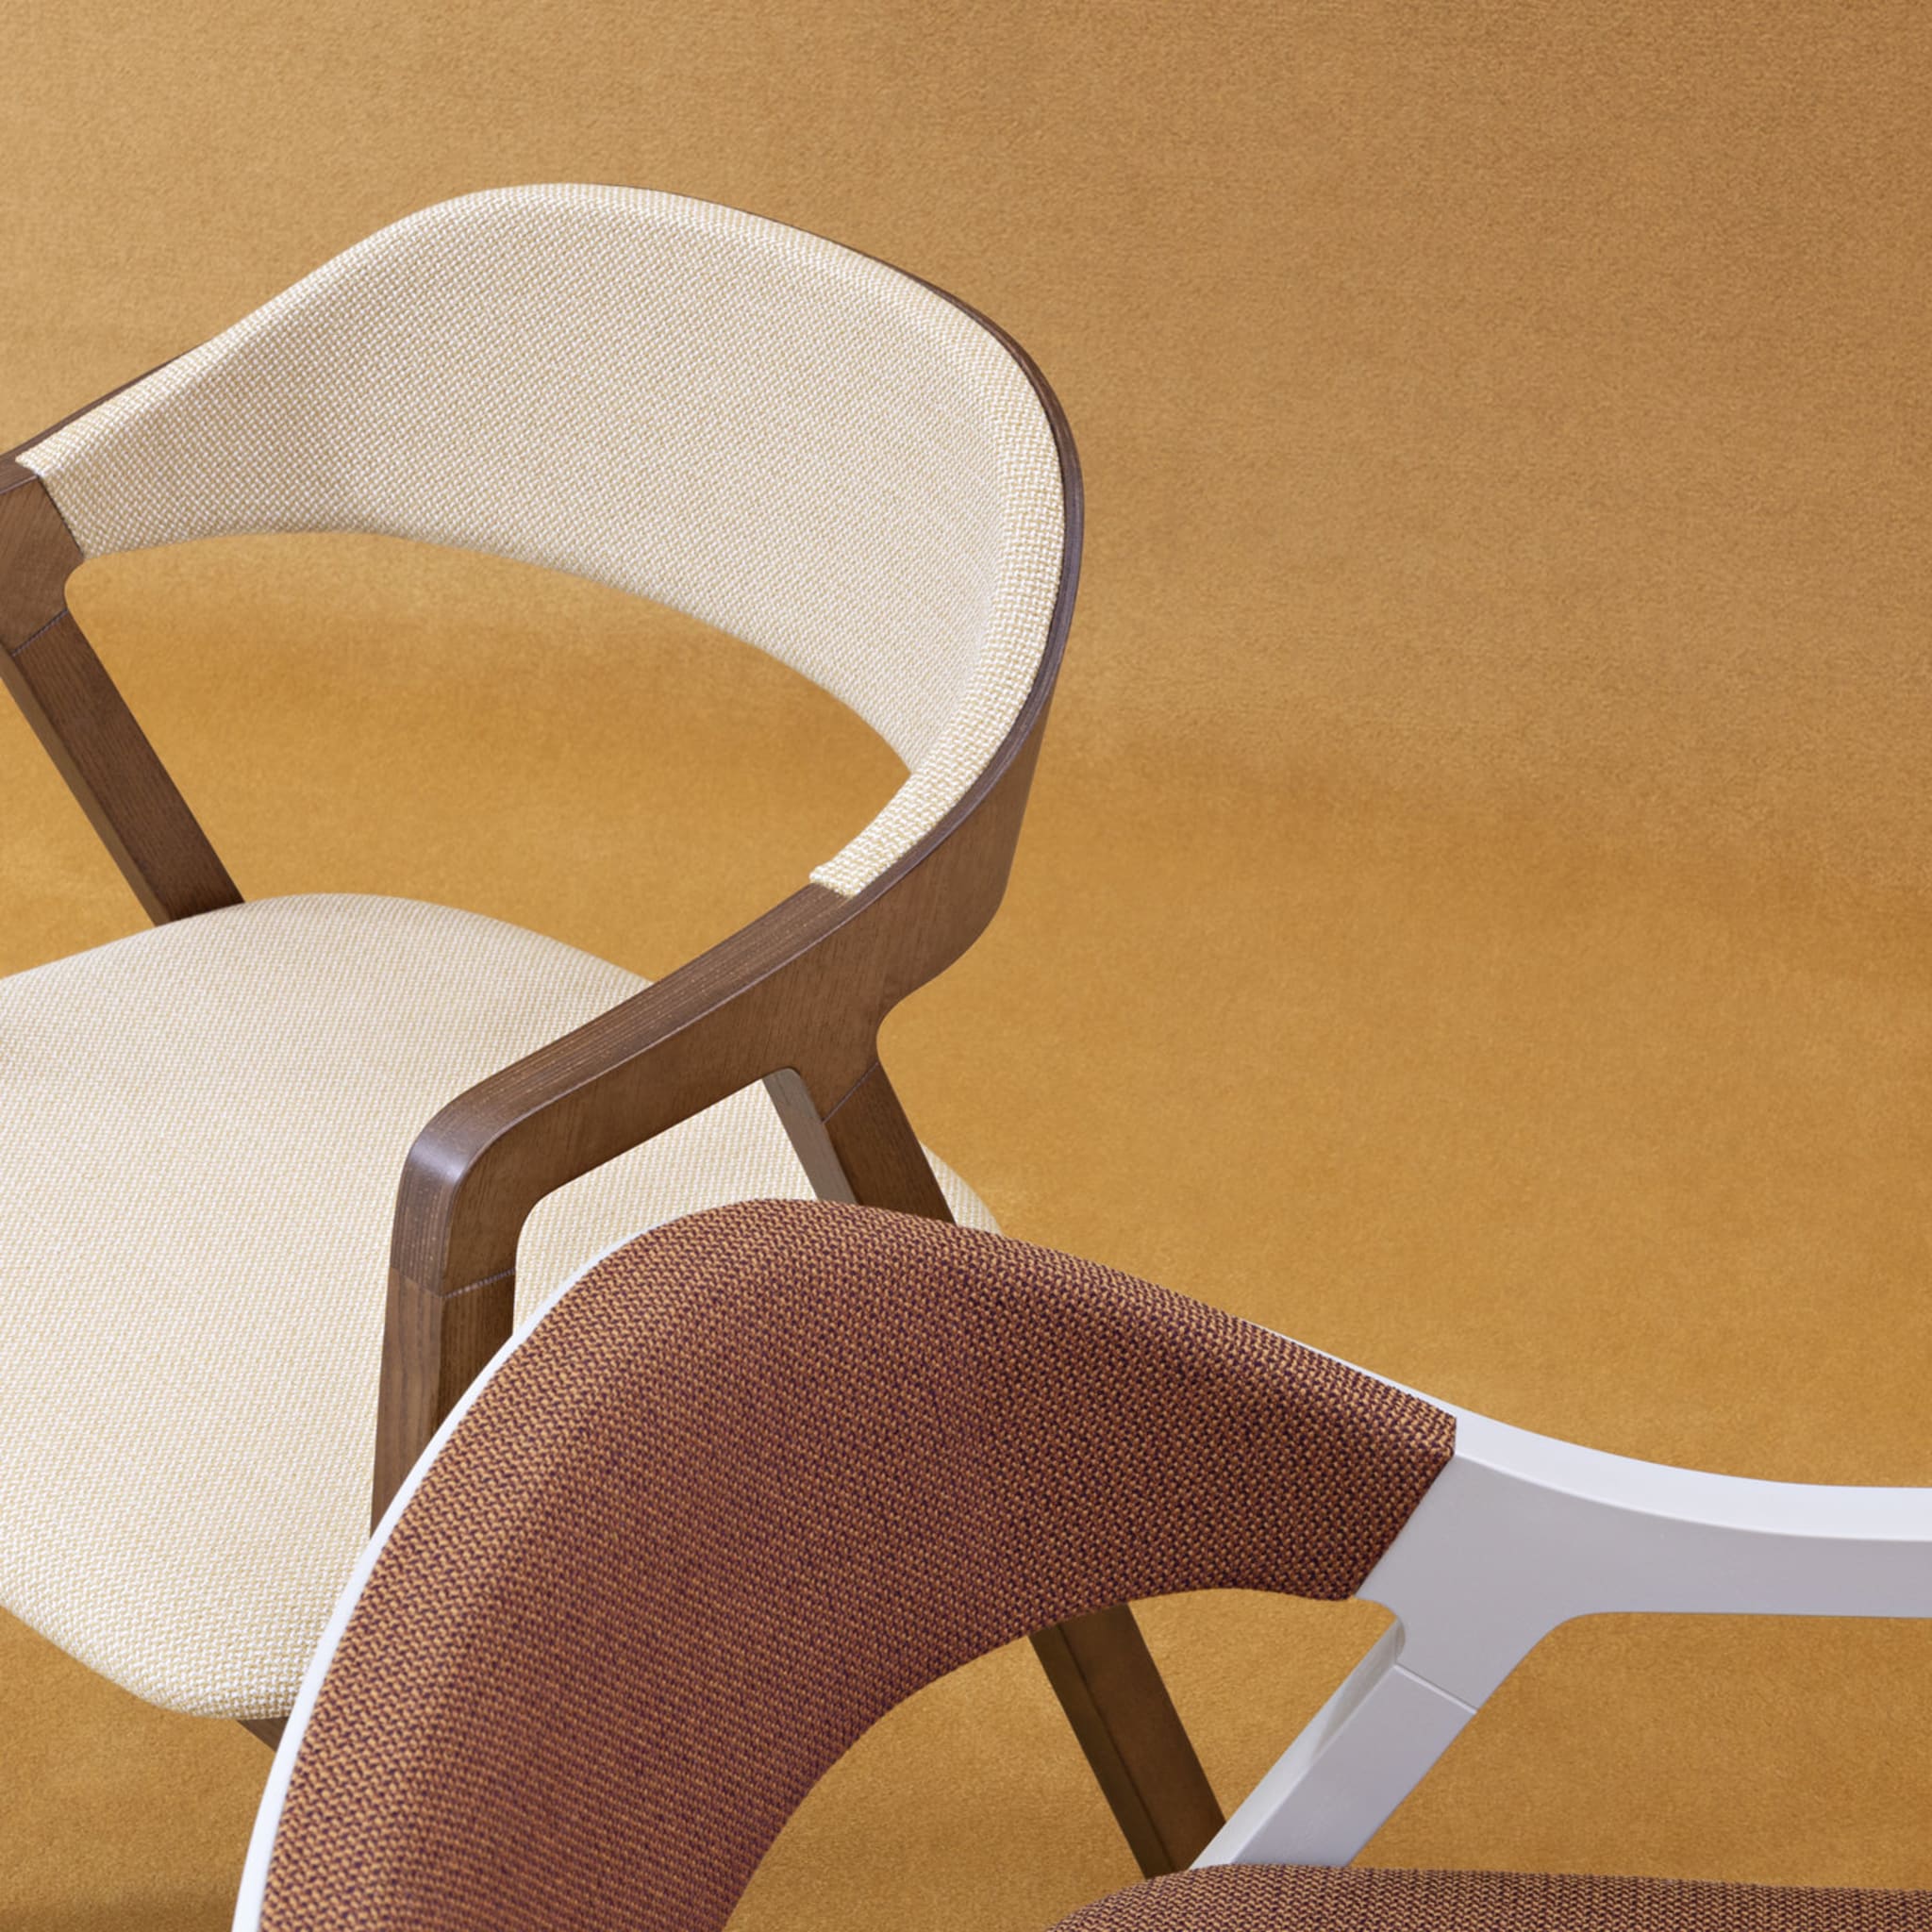 Layer Lounge Chair by Michael Geldmacher - Alternative view 1